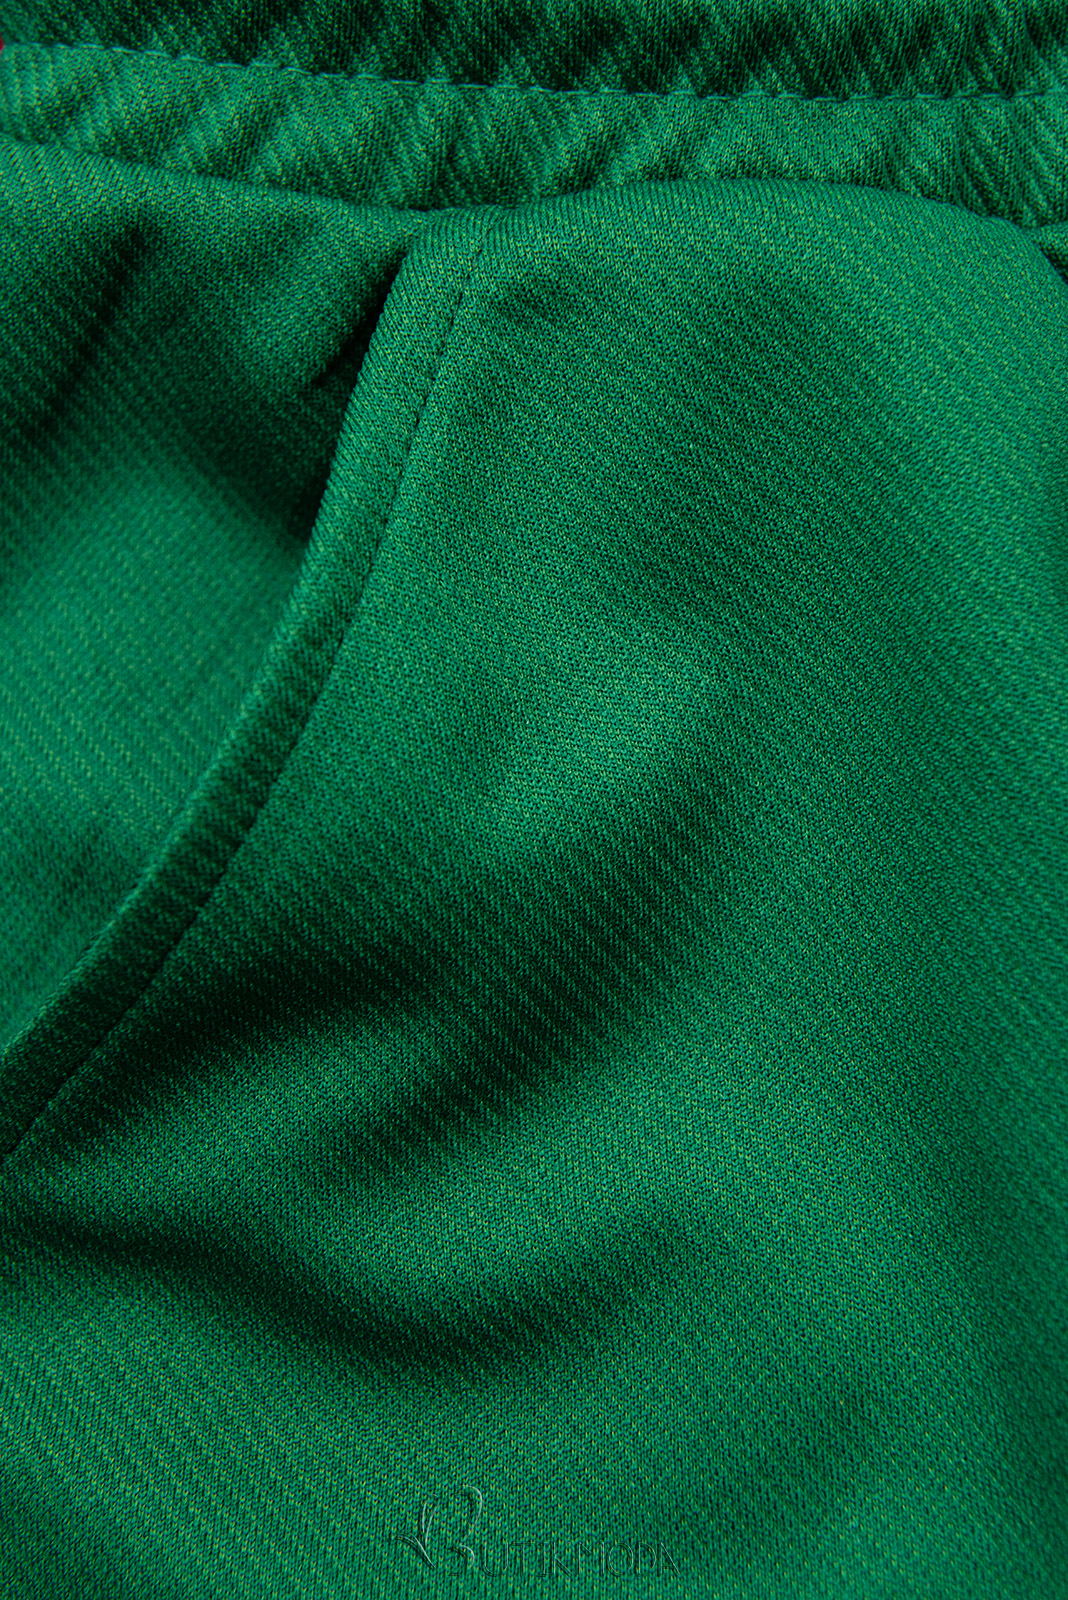 Zöld színű zsebes sportnadrág